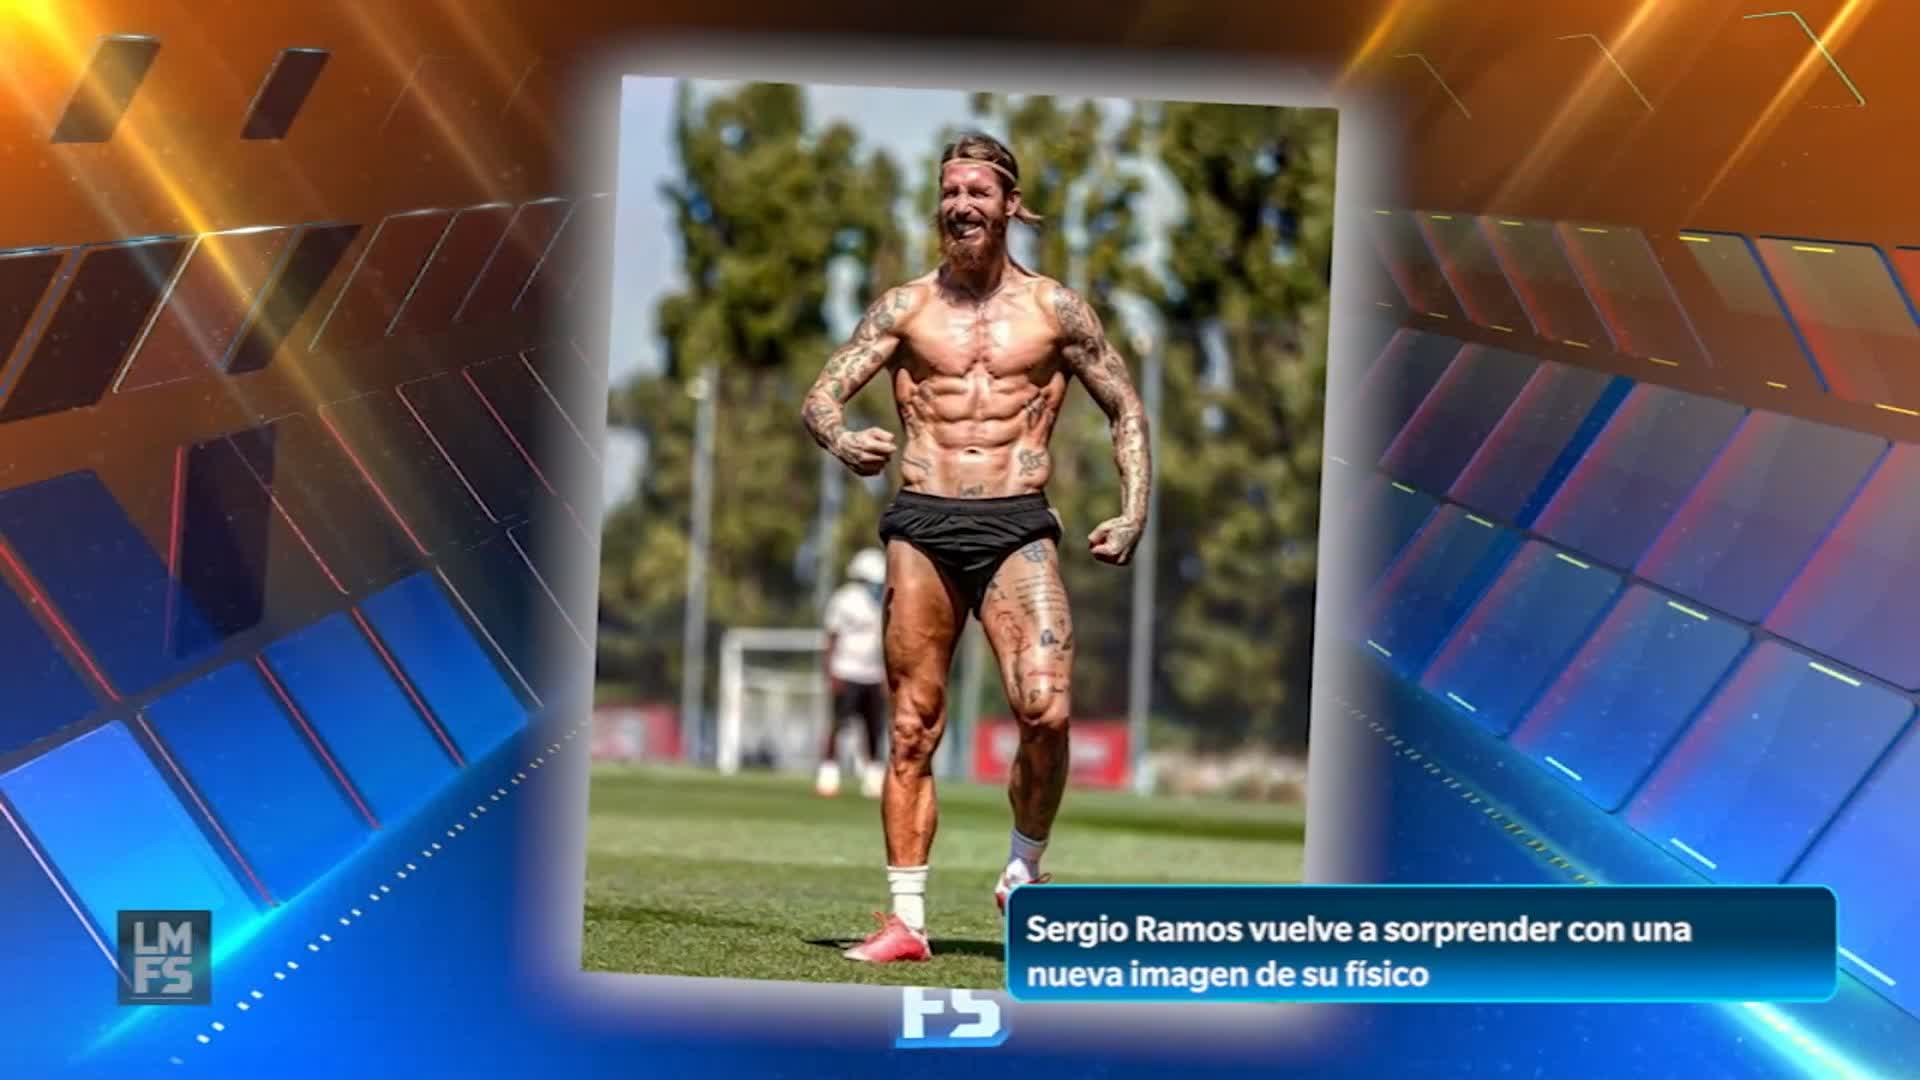 FOX Sports MX on Twitter: "EL IMPACTANTE FÍSICO DE SERGIO RAMOS 🔥 #LMFSenFOX El capitán del Real Madrid sorprendió con su físico durante un entrenamiento. recordamos los cambios de Mohamed